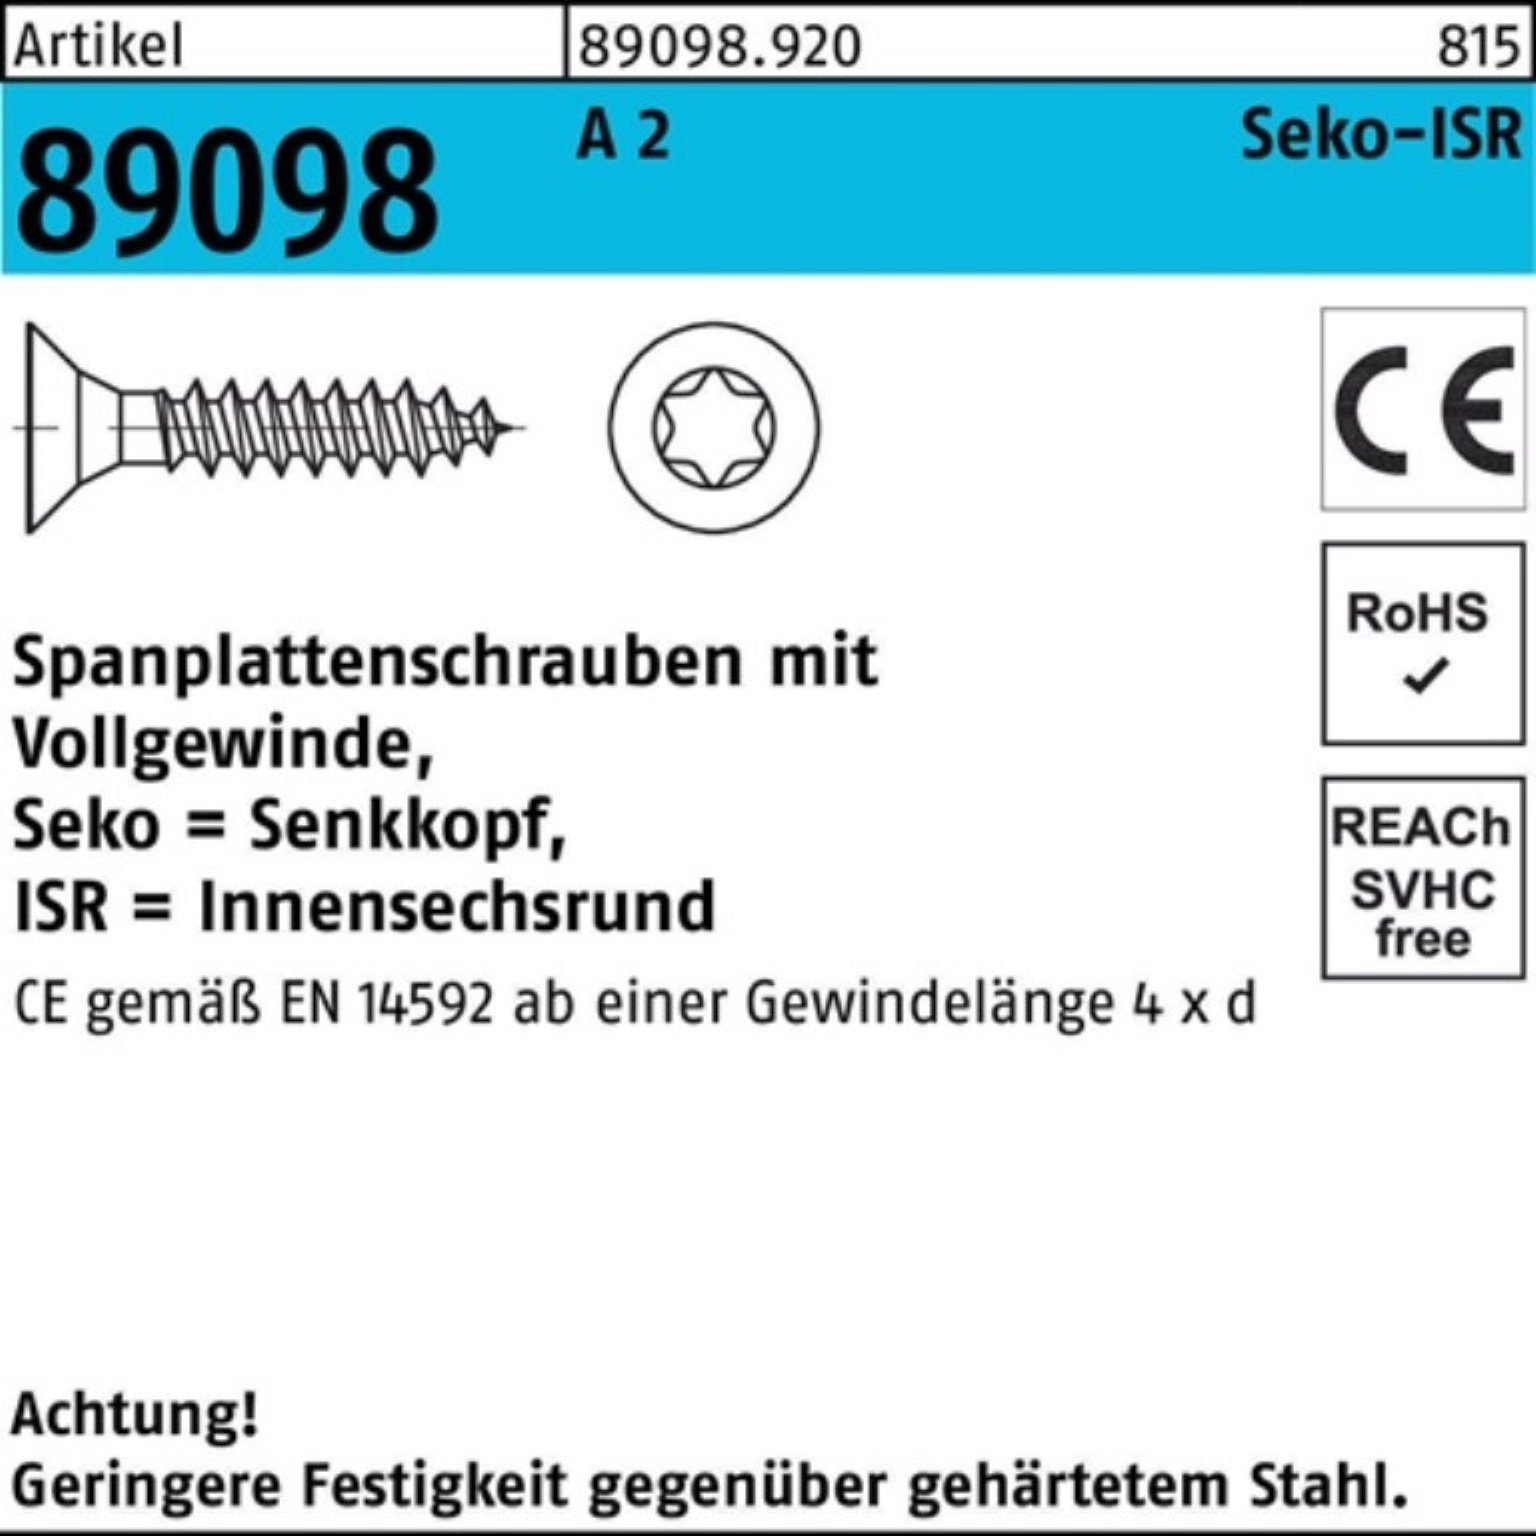 Reyher Spanplattenschraube 1000er Pack Spanplattenschraube R 89098 SEKO ISR VG 5x 25-T25 A 2 1000